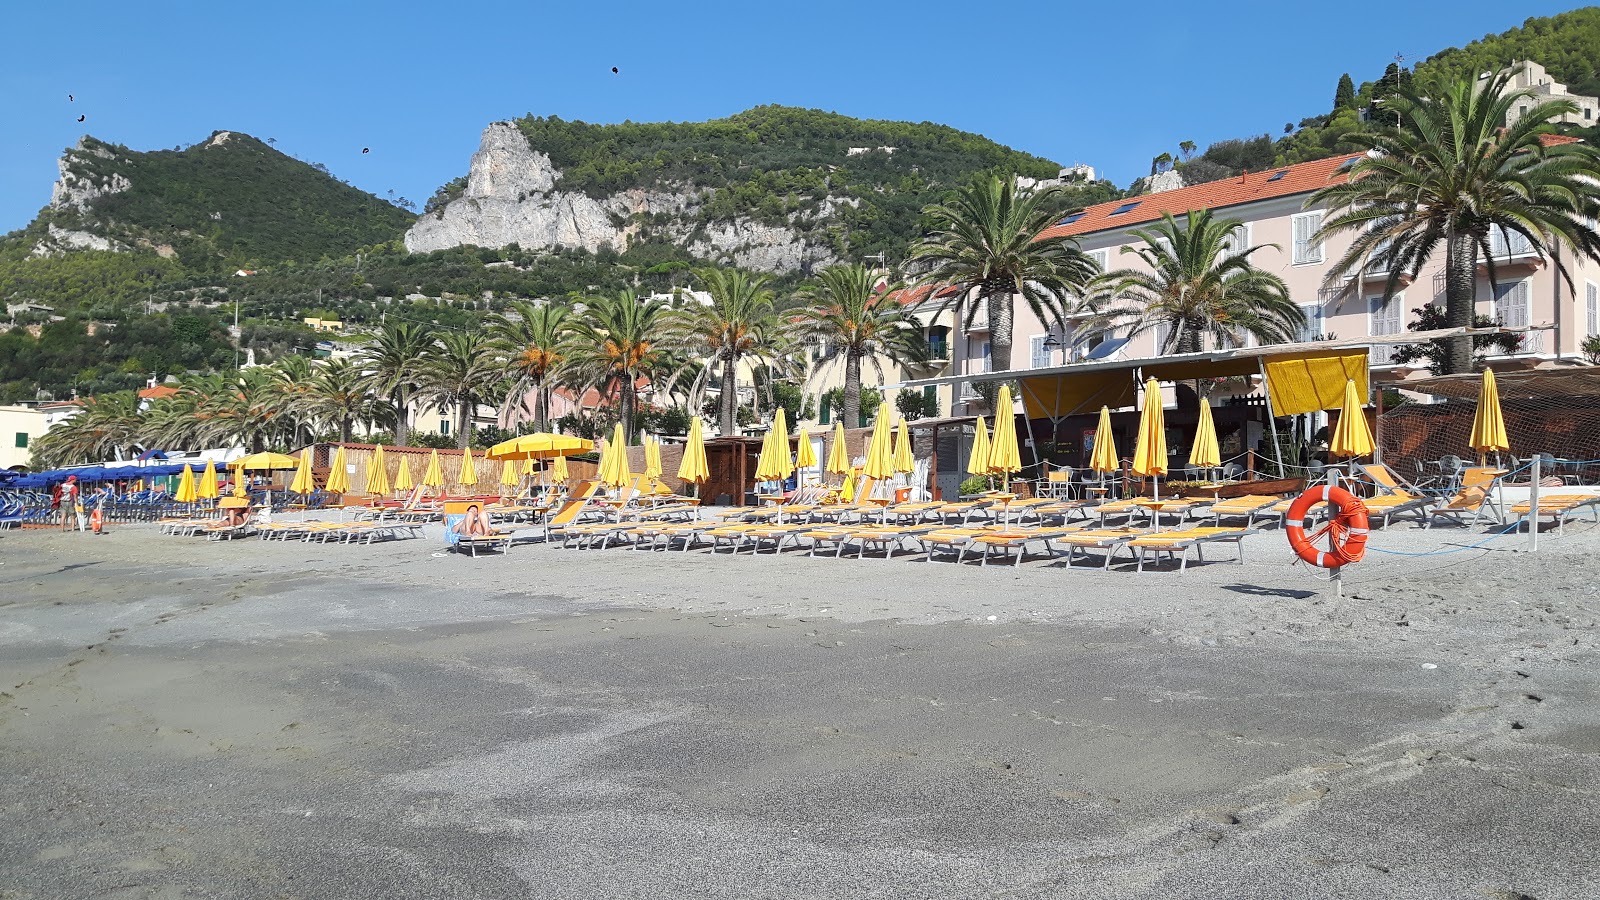 Foto af Spiaggia libera di Varigotti - populært sted blandt afslapningskendere